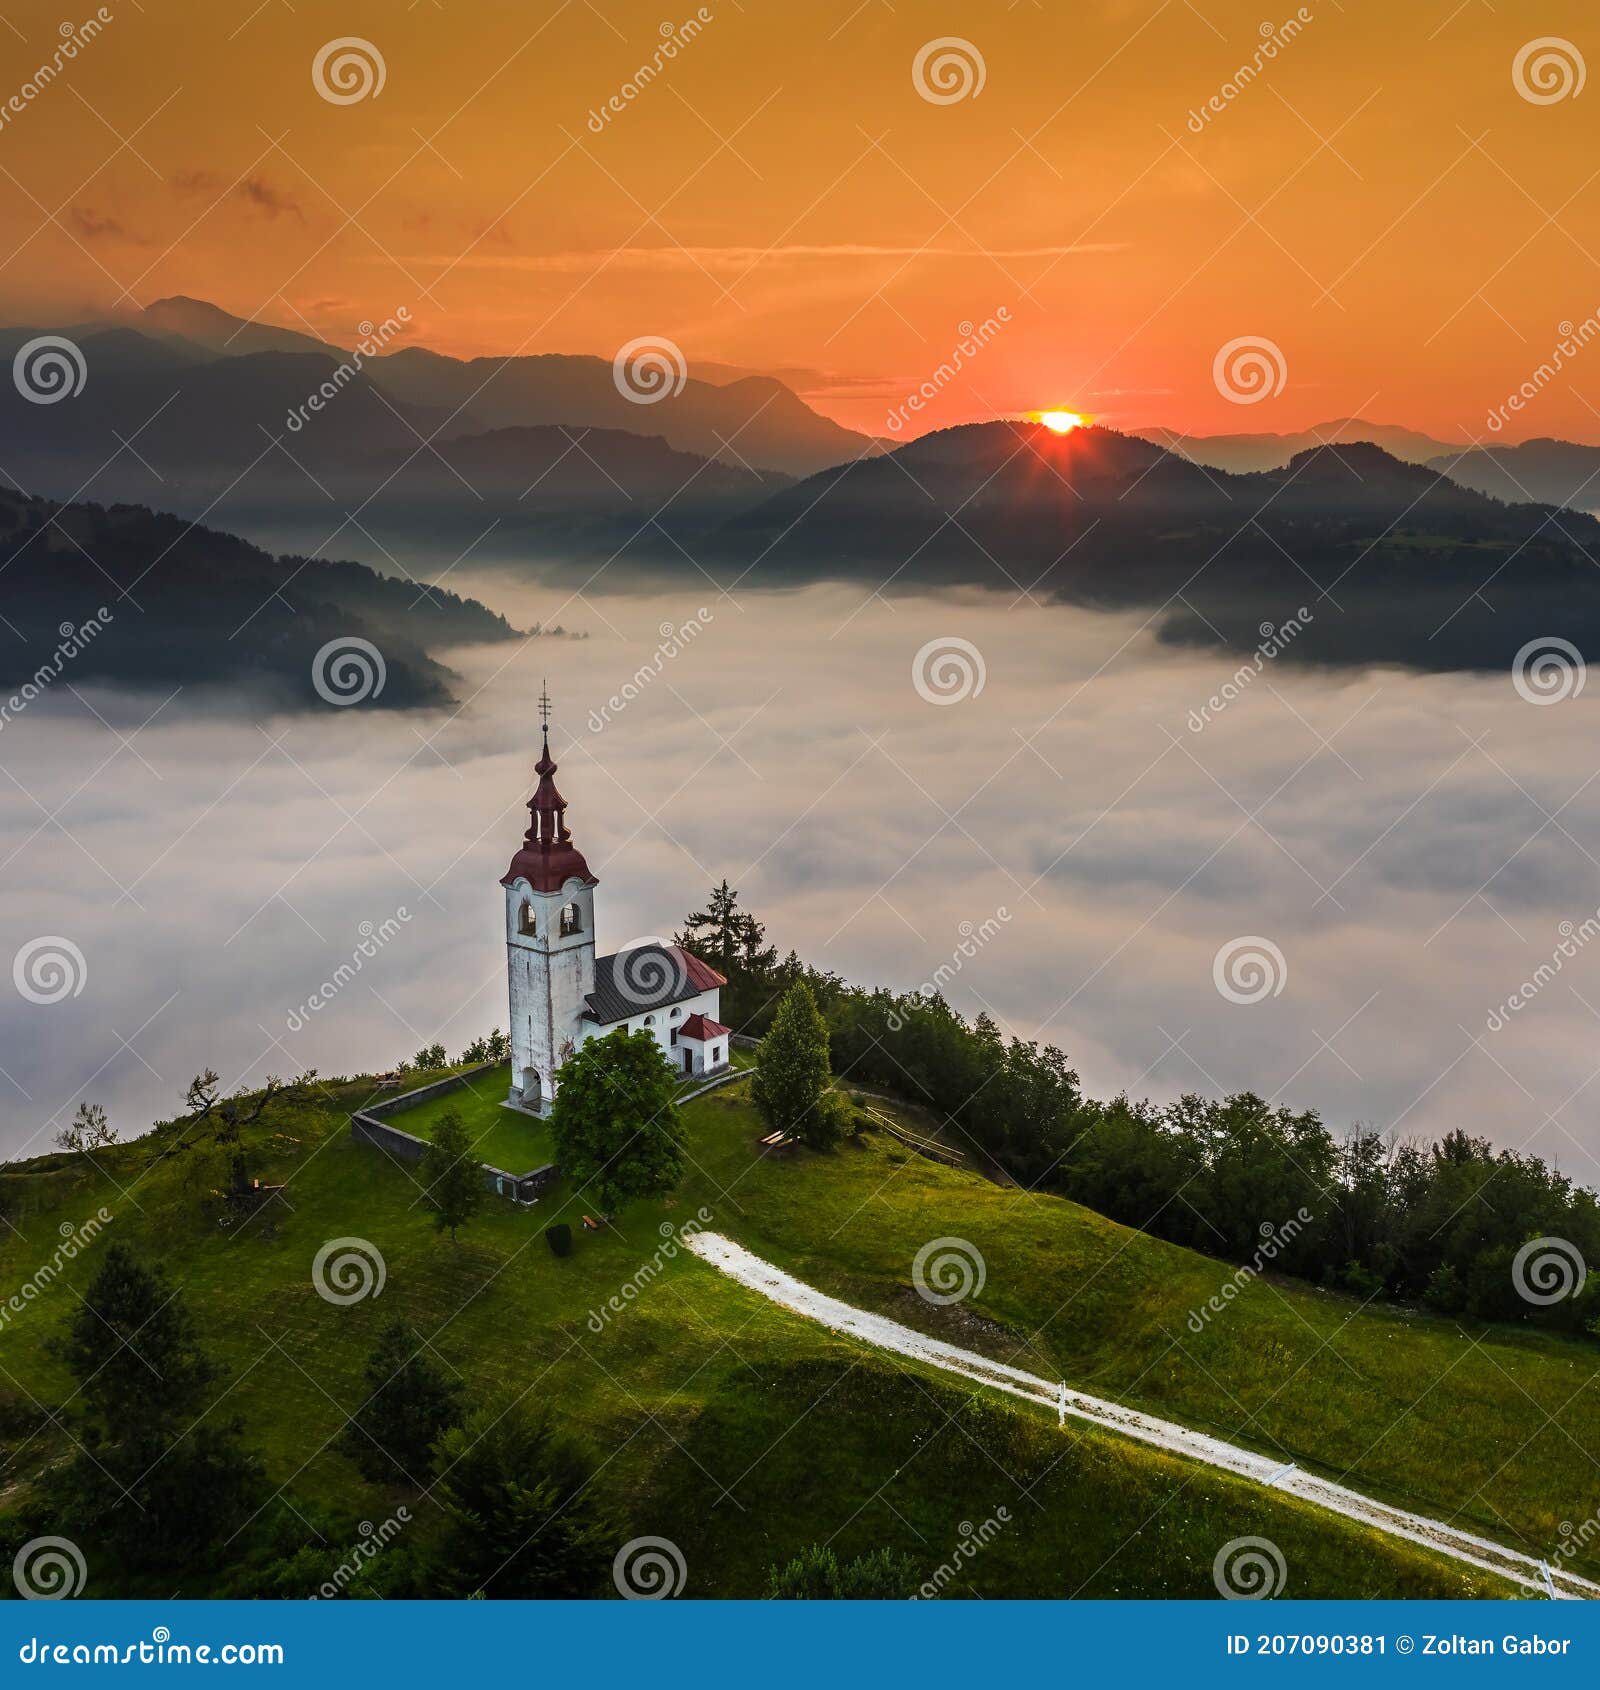 ÃÂ ebrelje, slovenia - aerial drone view of the beautiful hilltop church of st.ivan sv. ivan cerkev at sunrise with morning fog